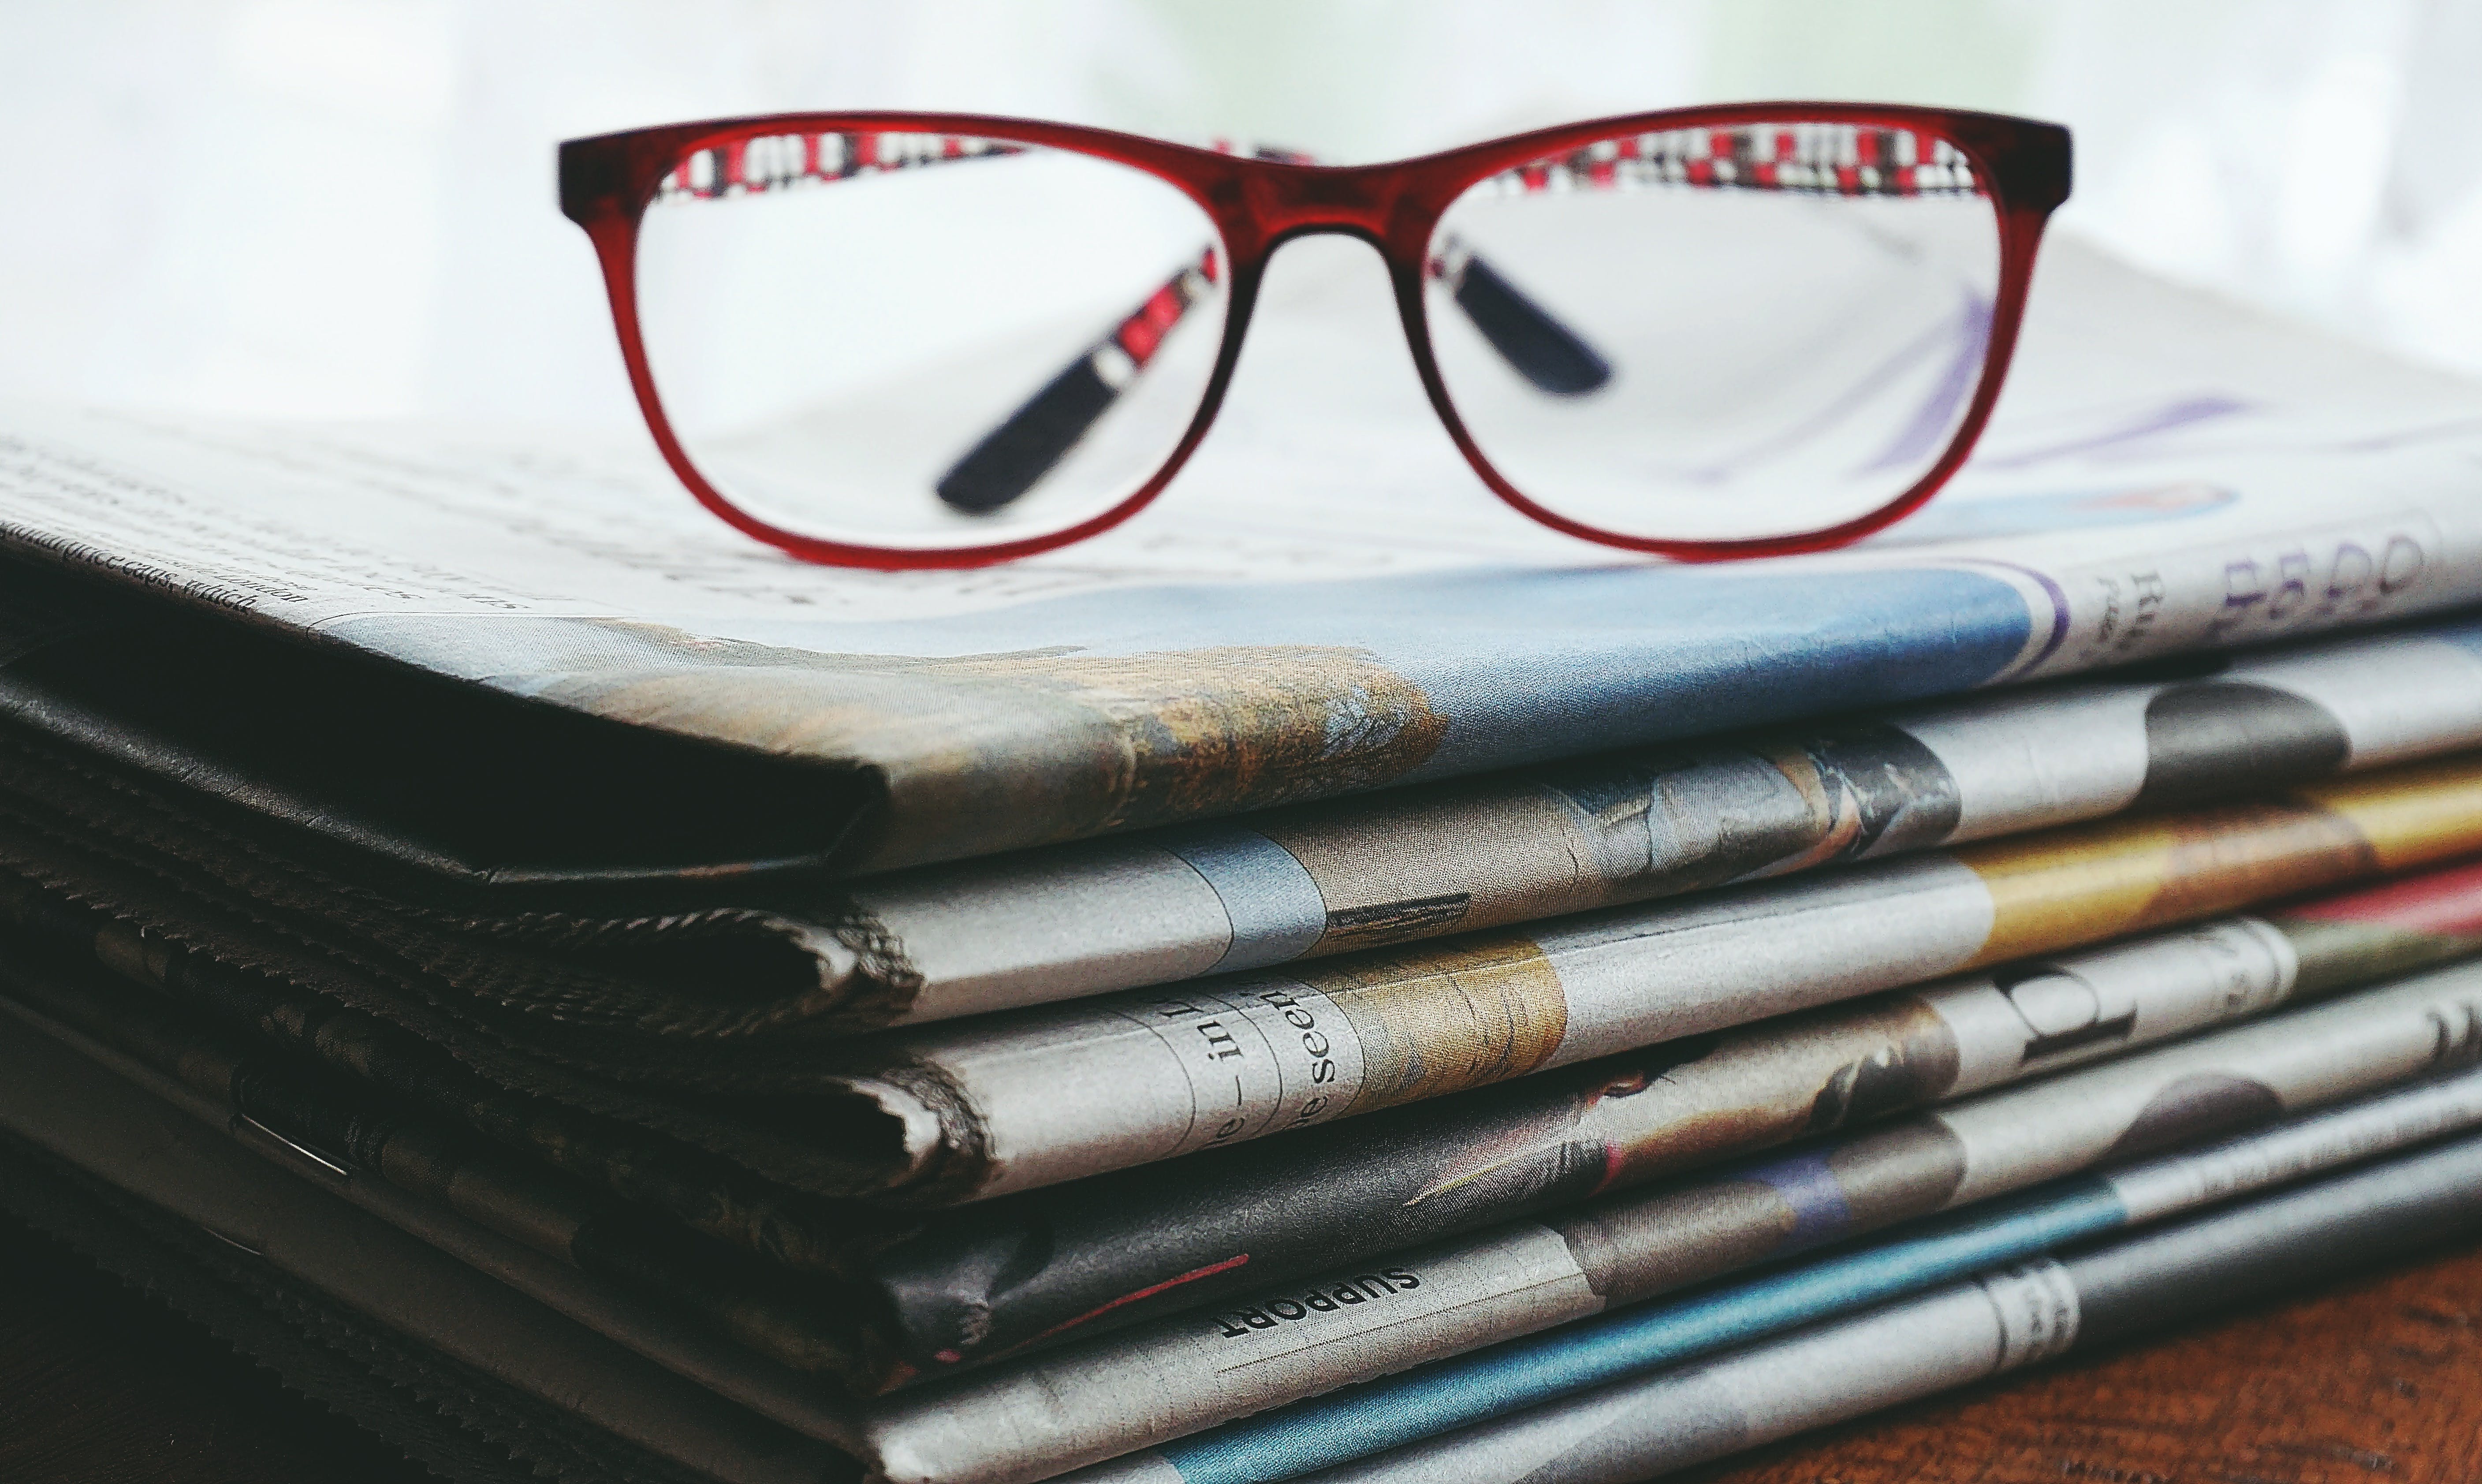 Gafas con marco rojo en los periódicos. | Fuente: Pexels